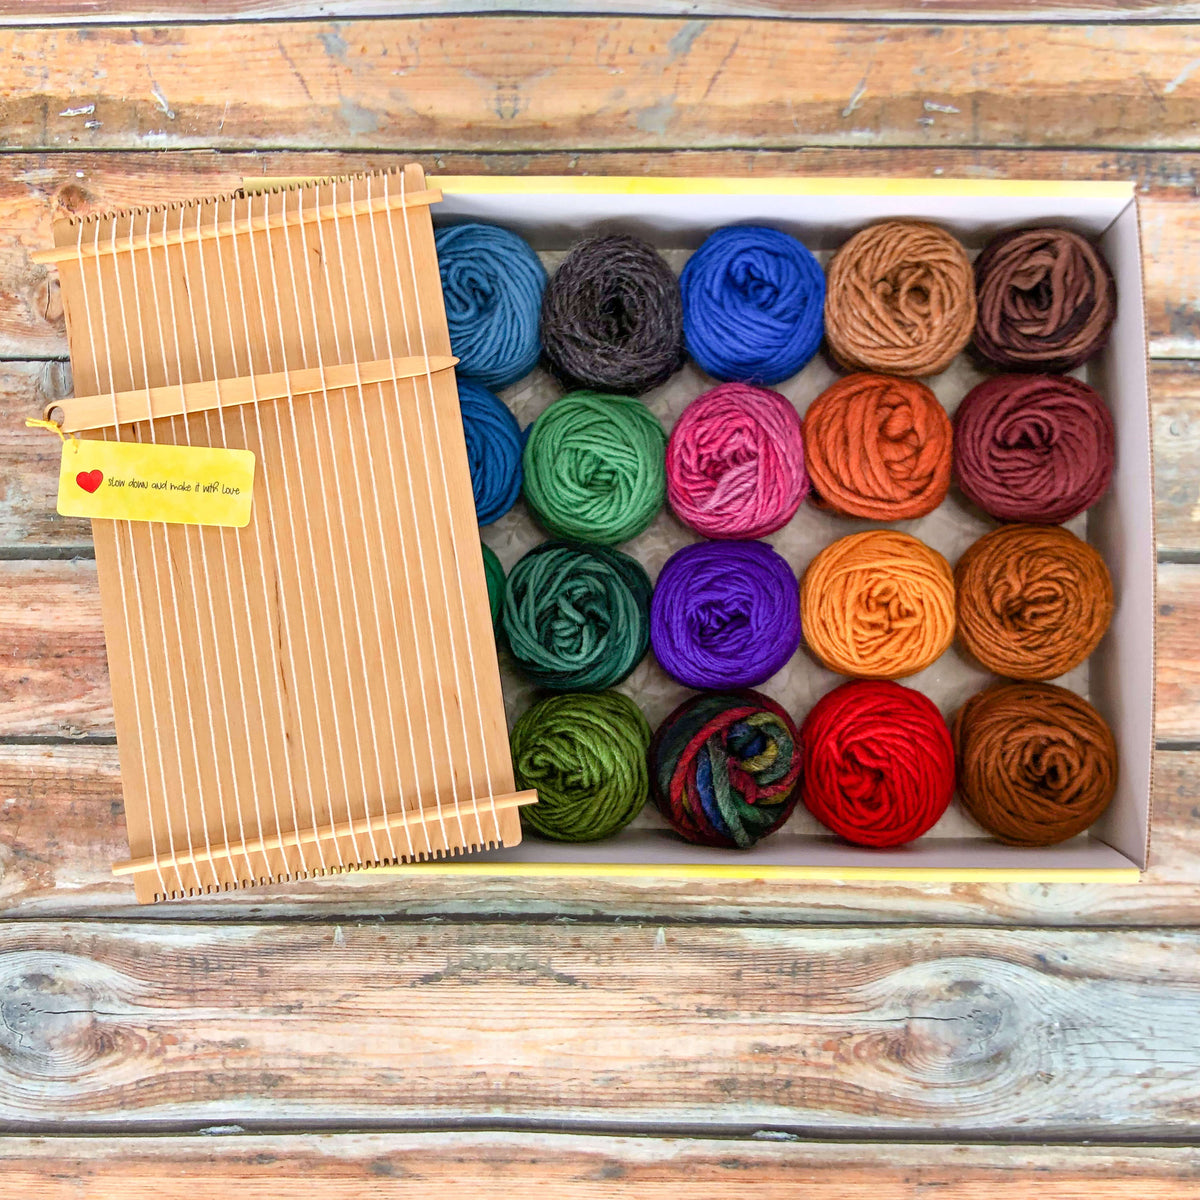 Weave the World - Rainforest - Weaving Kit